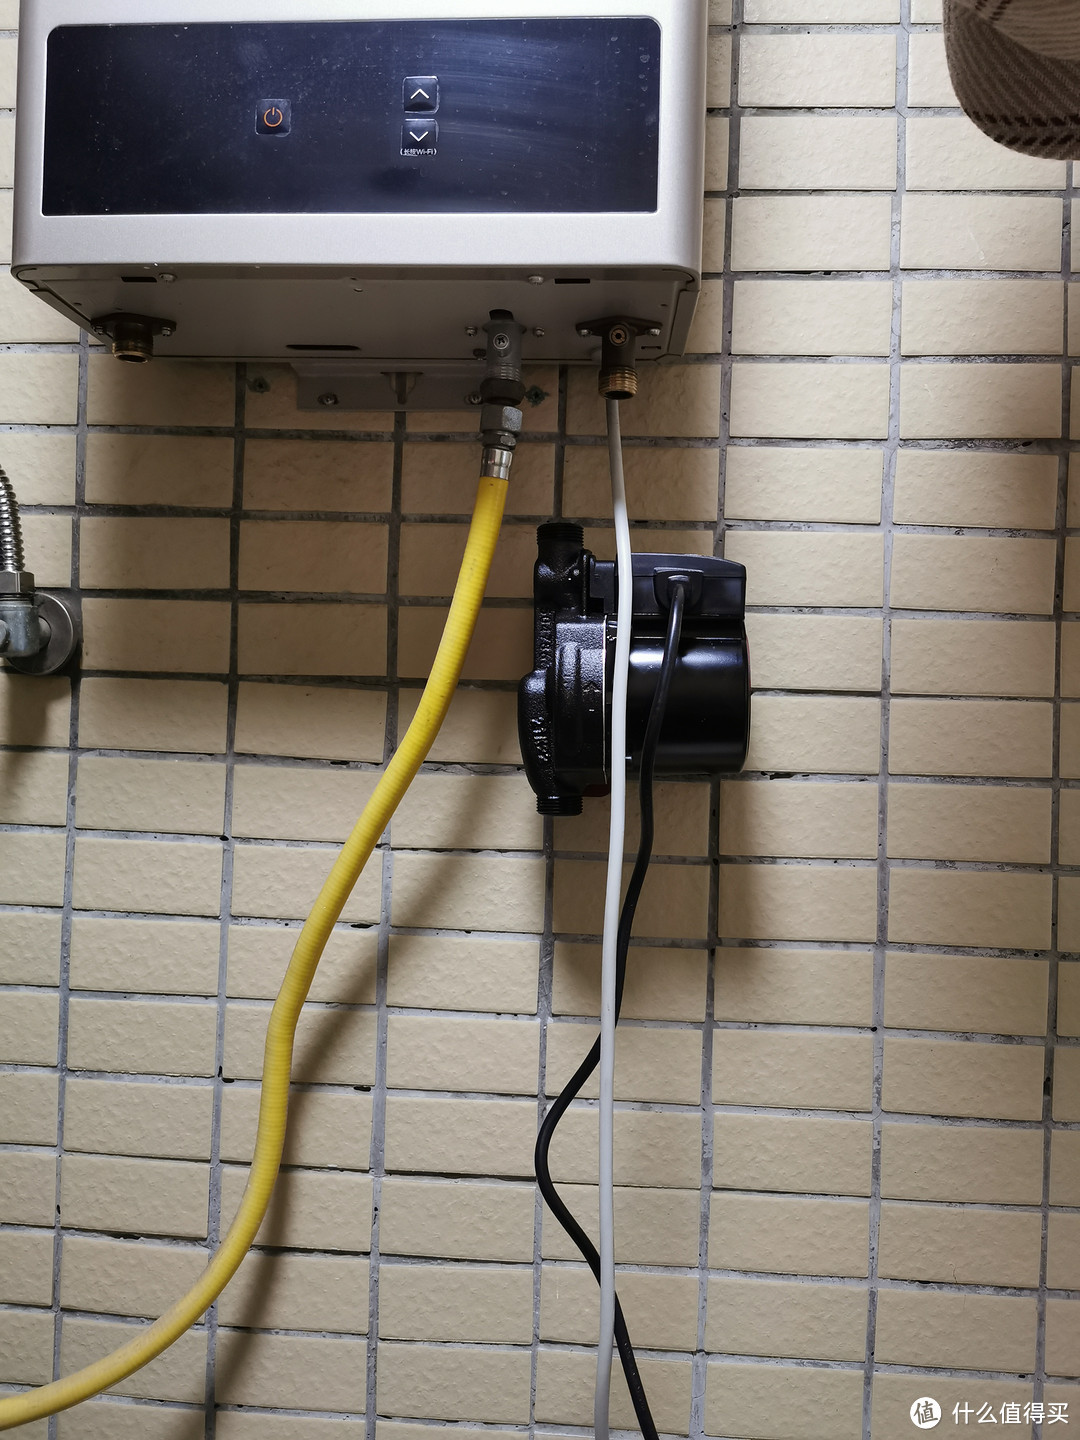 UPA90挂到支架上。这个增压泵挺沉的（包装盒上标的3.7kg），幸好买了专用支架可以上墙，不然吊在热水器冷水入口上我肯定不放心。